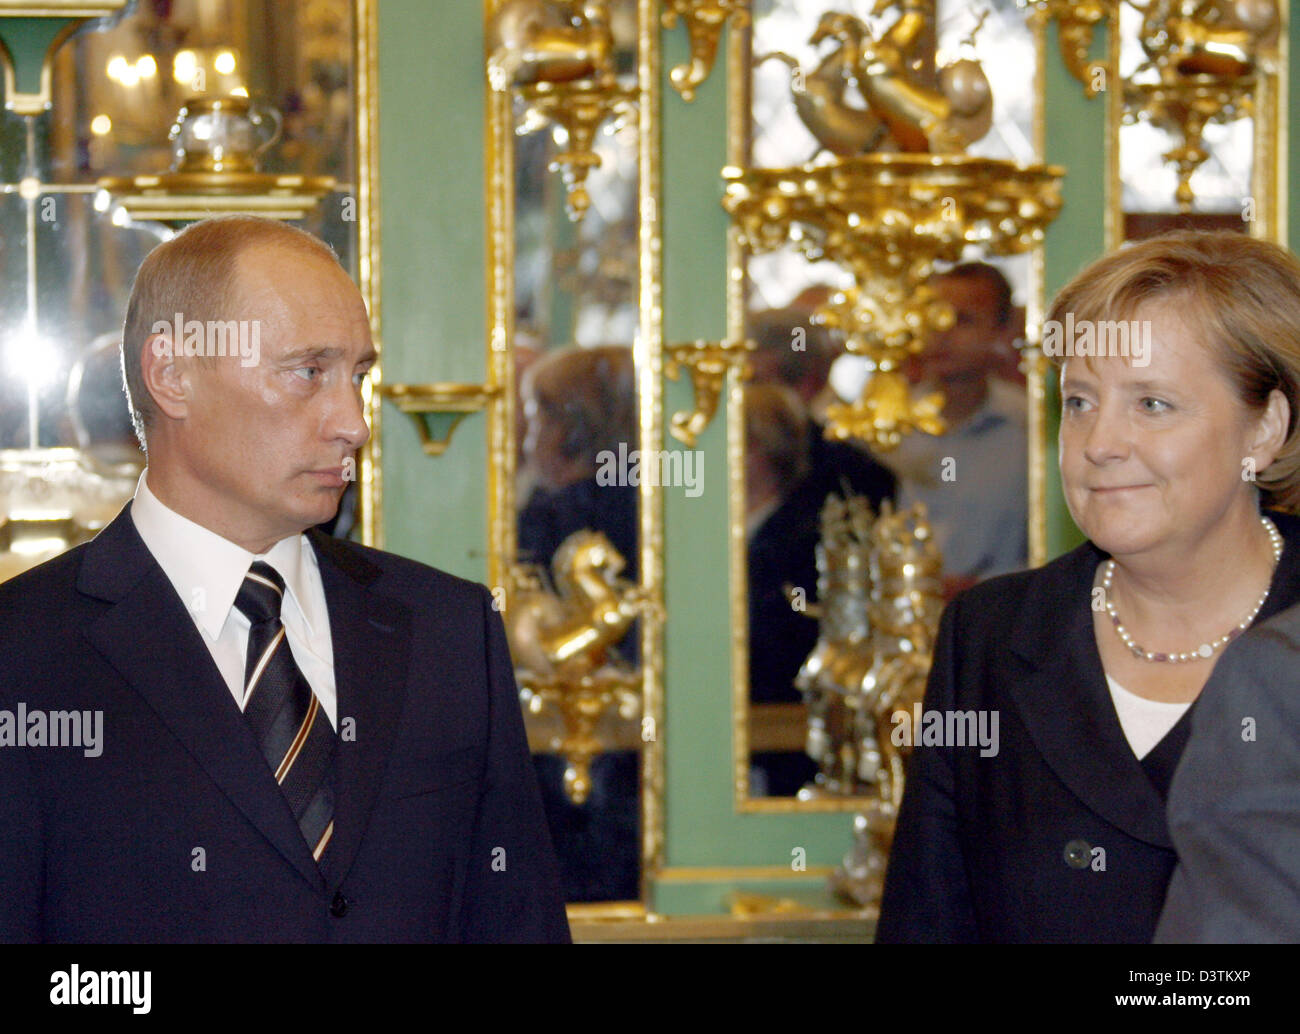 La chancelière allemande Angela Merkel (R) et le président russe Vladimir Poutine visite la Voûte verte à Dresde, Allemagne, mardi 10 octobre 2006. Poutine est sur une visite de deux jours en Allemagne. Photo : Herbert Knosowski Banque D'Images